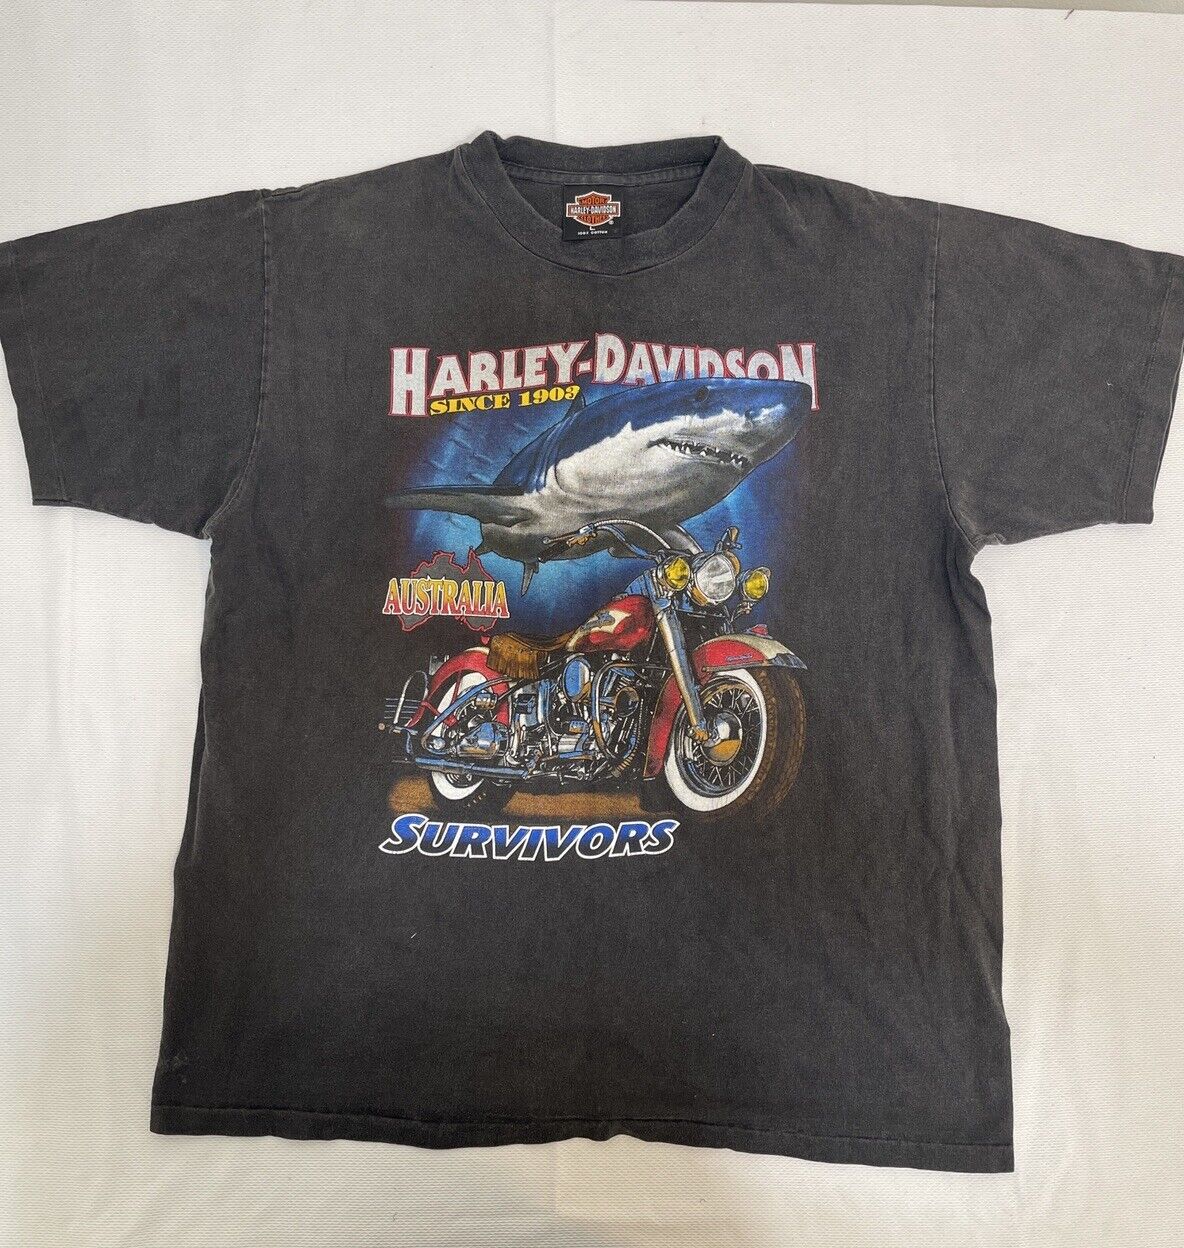 Harley-Davidson Vintage Short Sleeve Shirts for Men Size:Large